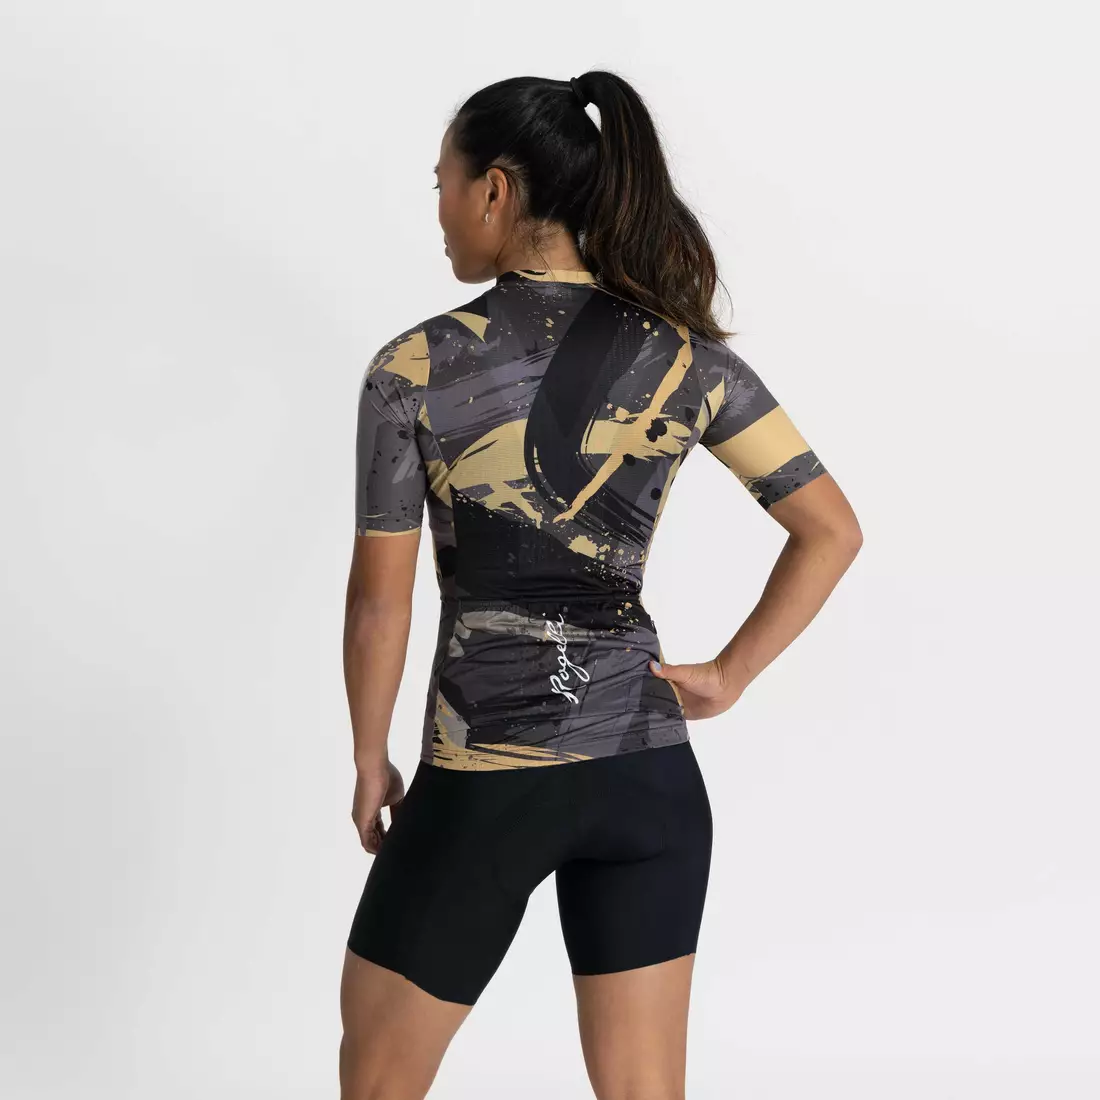 ROGELLI FLAIR női kerékpáros mez fekete arany